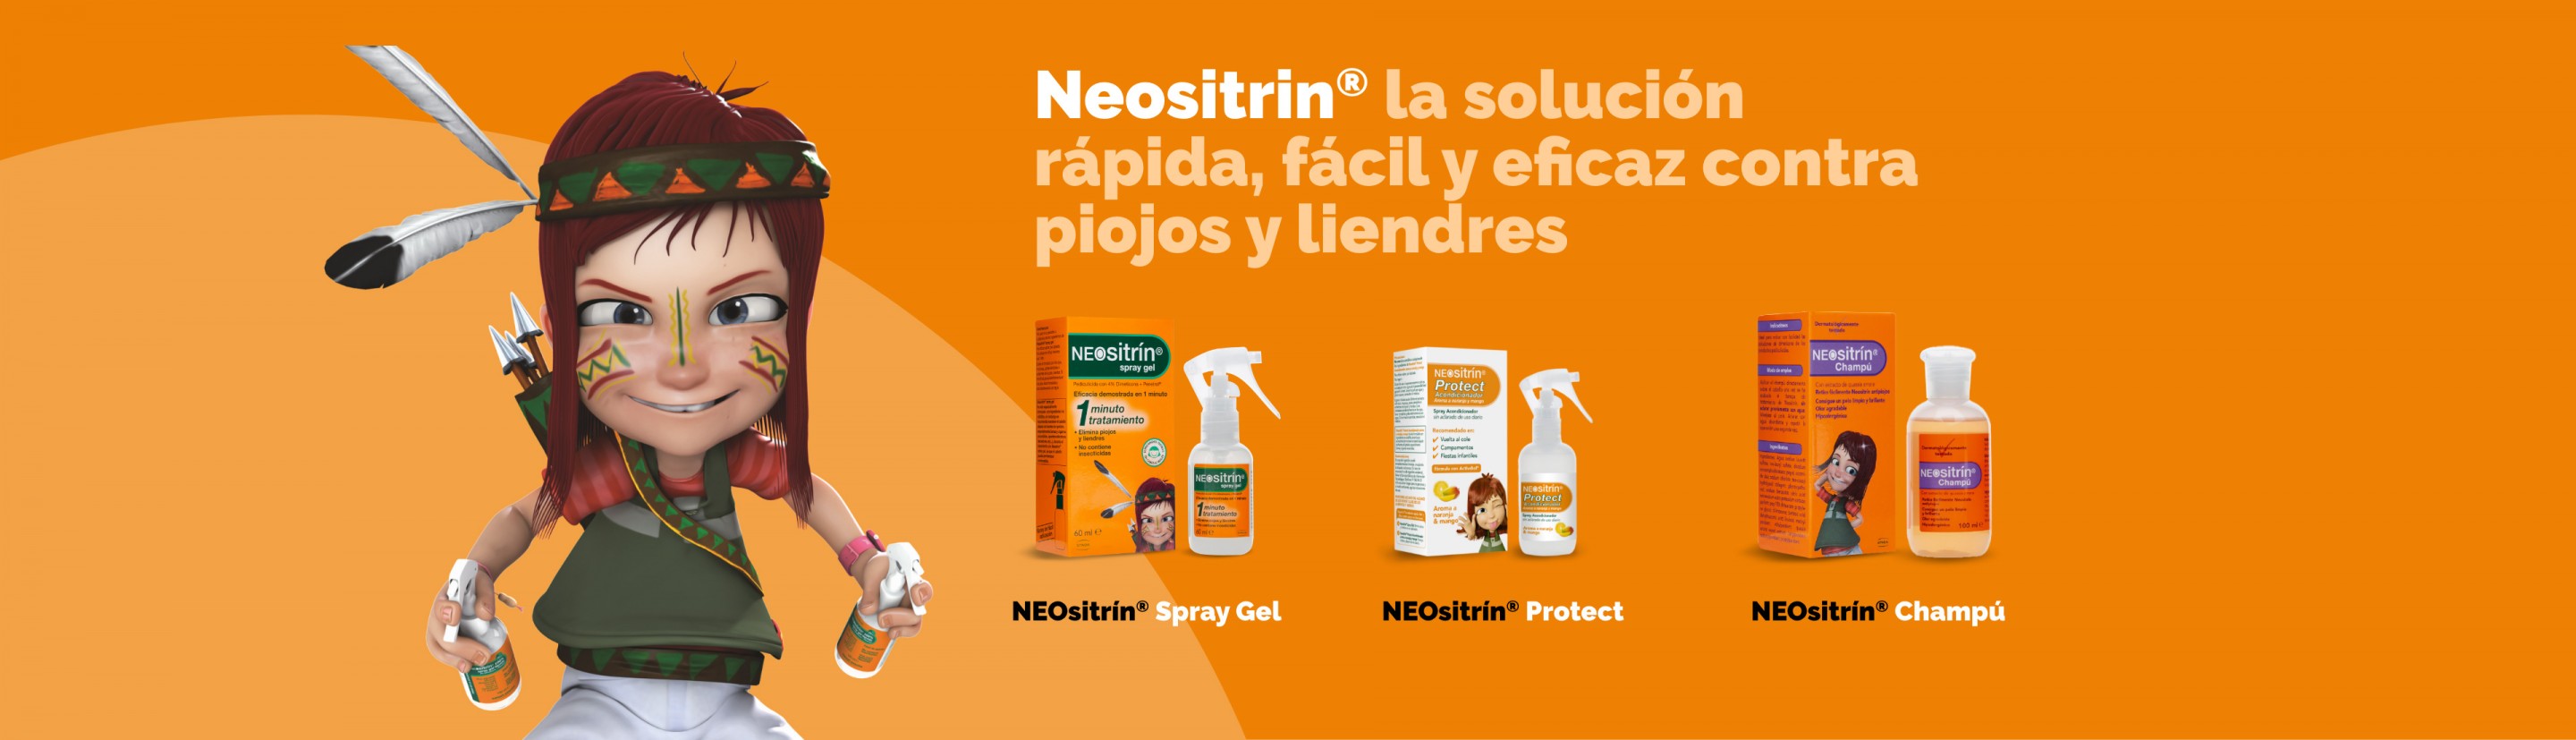 Neositrin Champú post tratamiento piojos, 100ml + Spray Gel - Elimina 100%  piojos y liendres en 1 minuto y en 1 aplicación, 100ml